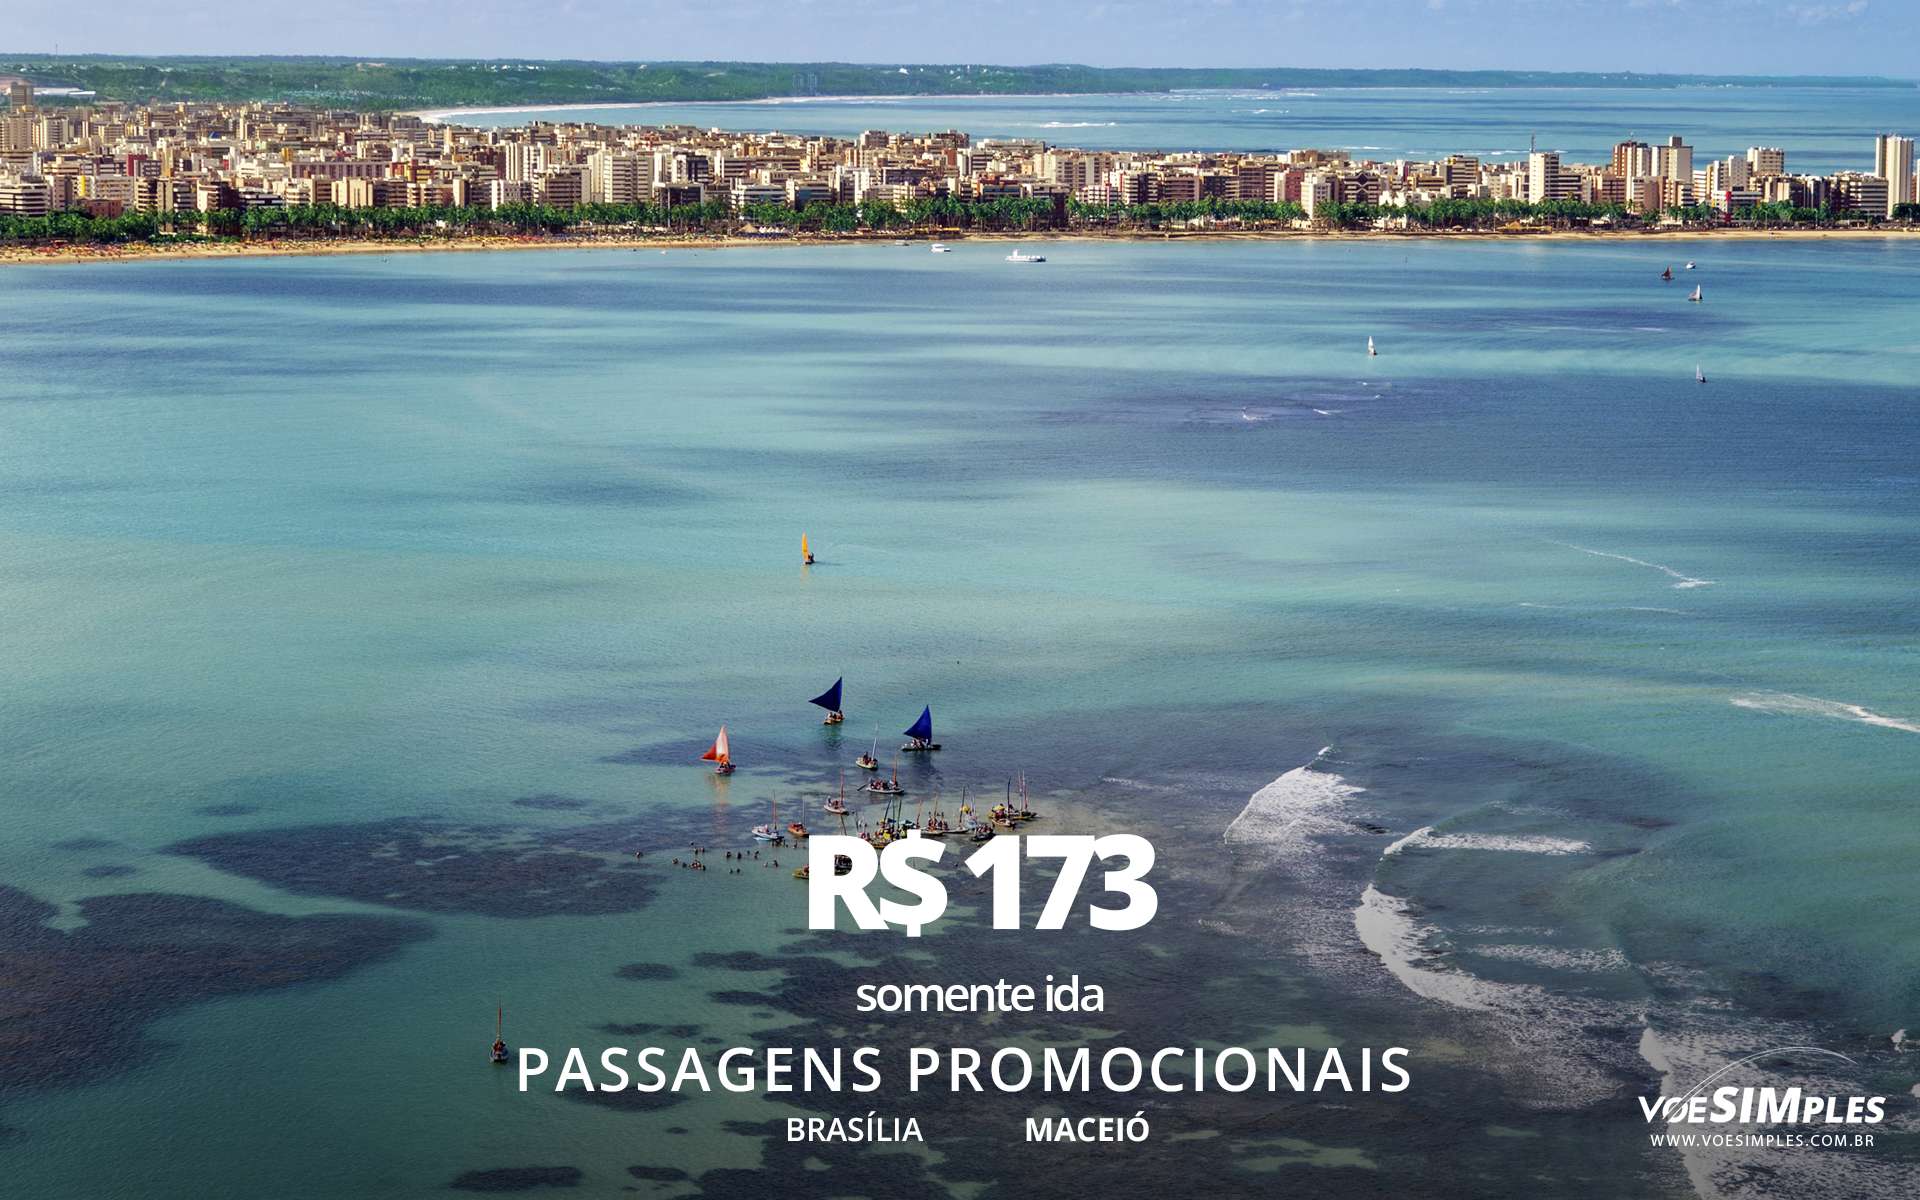 passagem-aerea-promocional-azul-brasilia-maceio-brasil-america-sul-voe-simples1